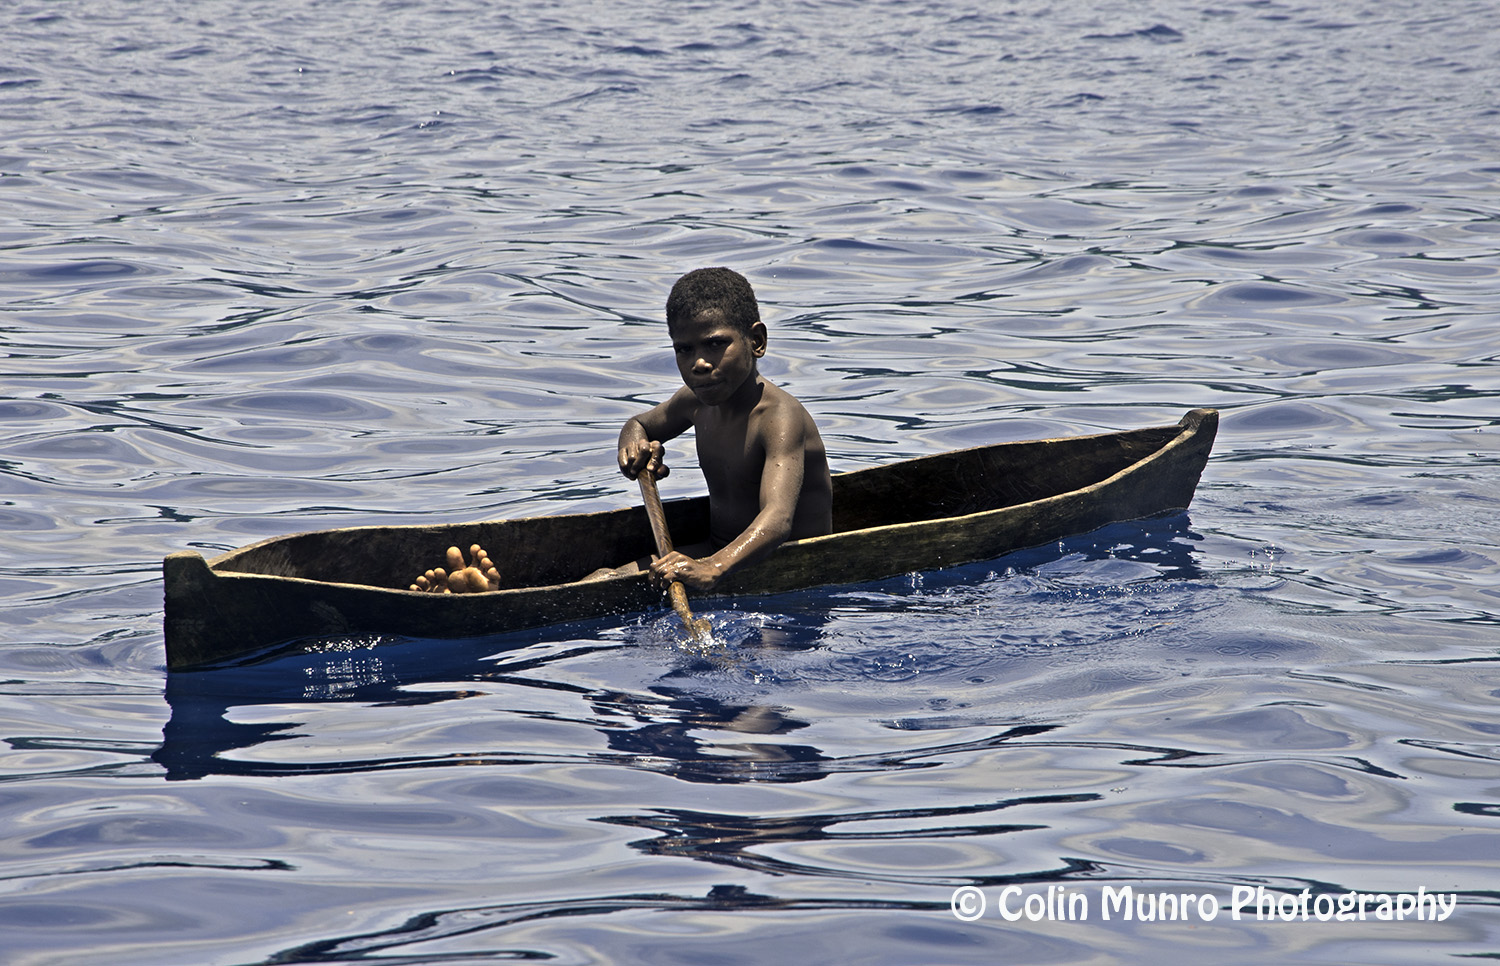 A local boy in a dugout canoe paddles by us. Garove Island, Vitu Islands, Bismark Sea, Papua New Guinea. Copyright Colin Munro